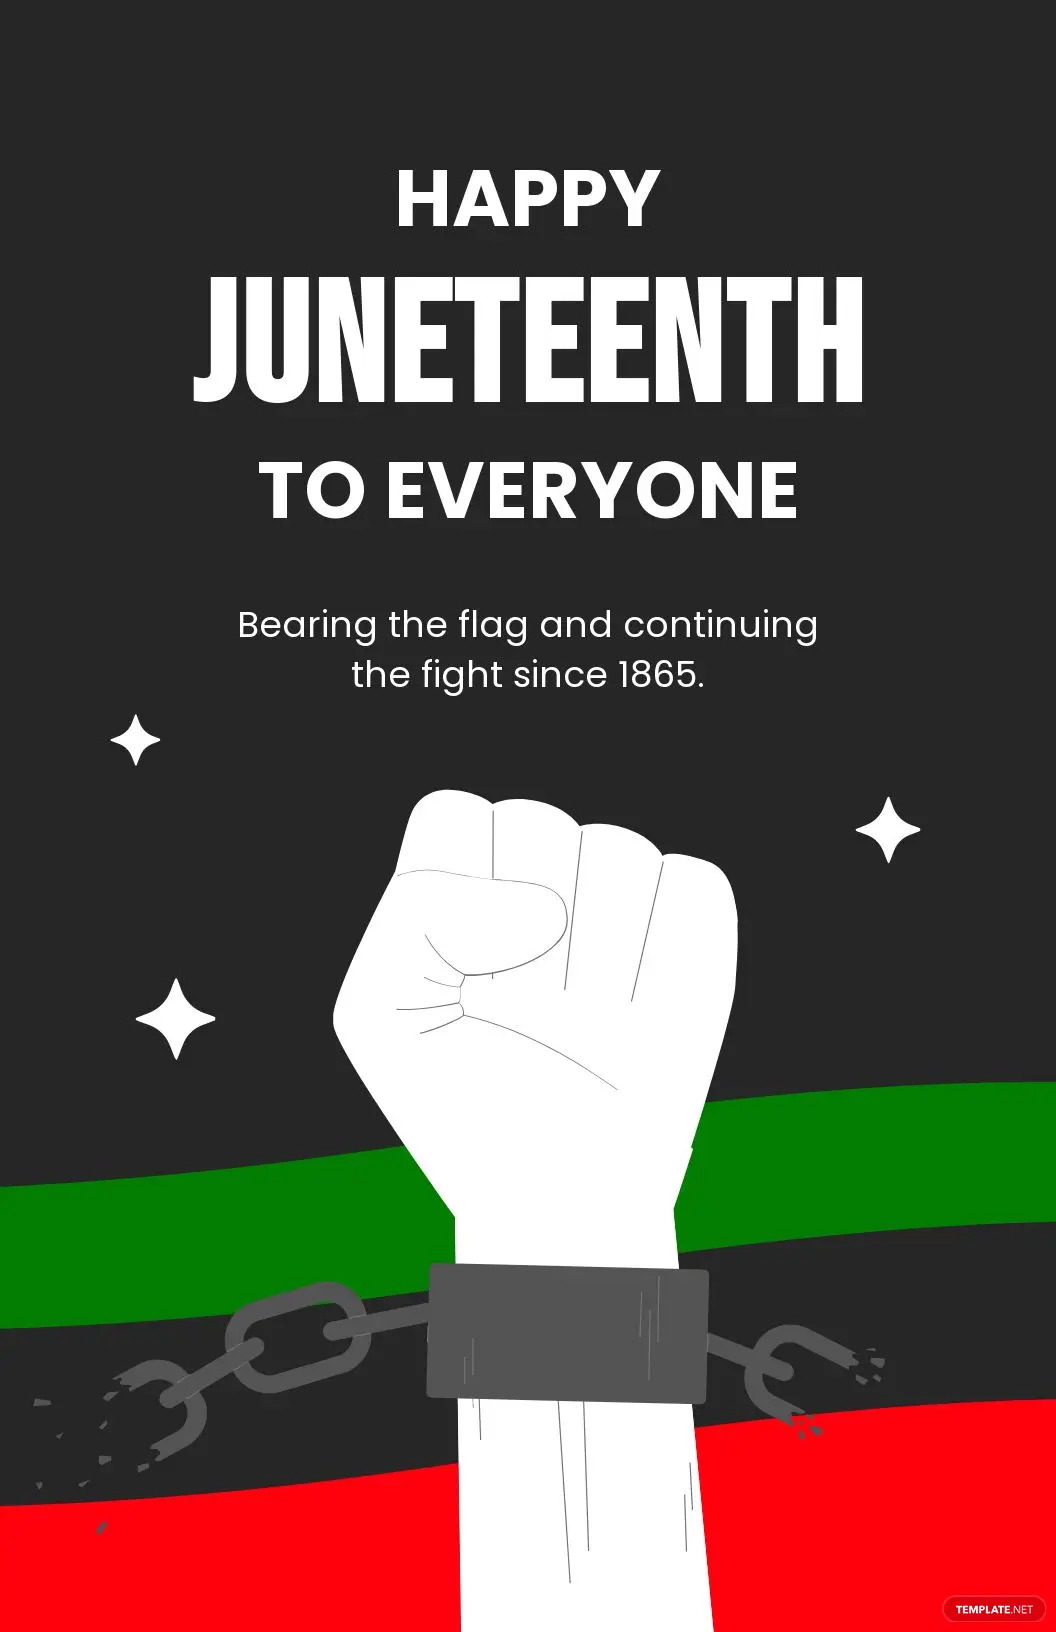 juneteenth-flag-poster